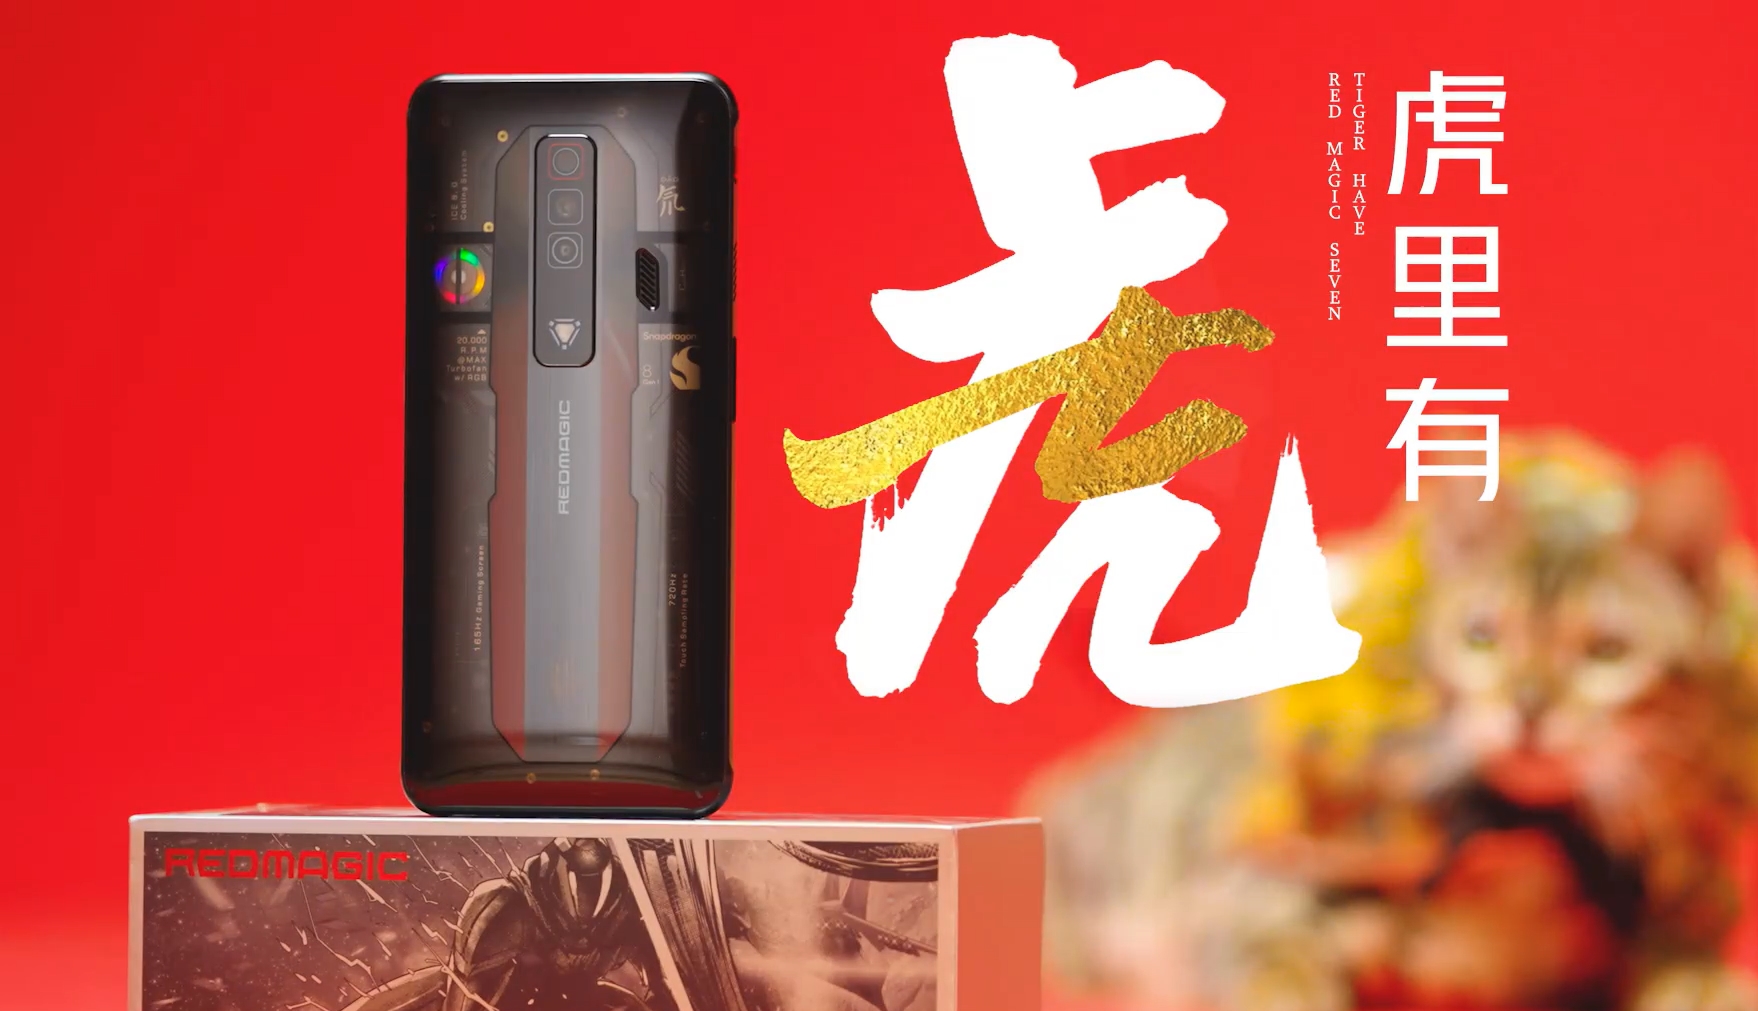 Pannello posteriore trasparente e tripla fotocamera: Nubia ha mostrato lo smartphone da gaming Red Magic 7 prima dell'annuncio